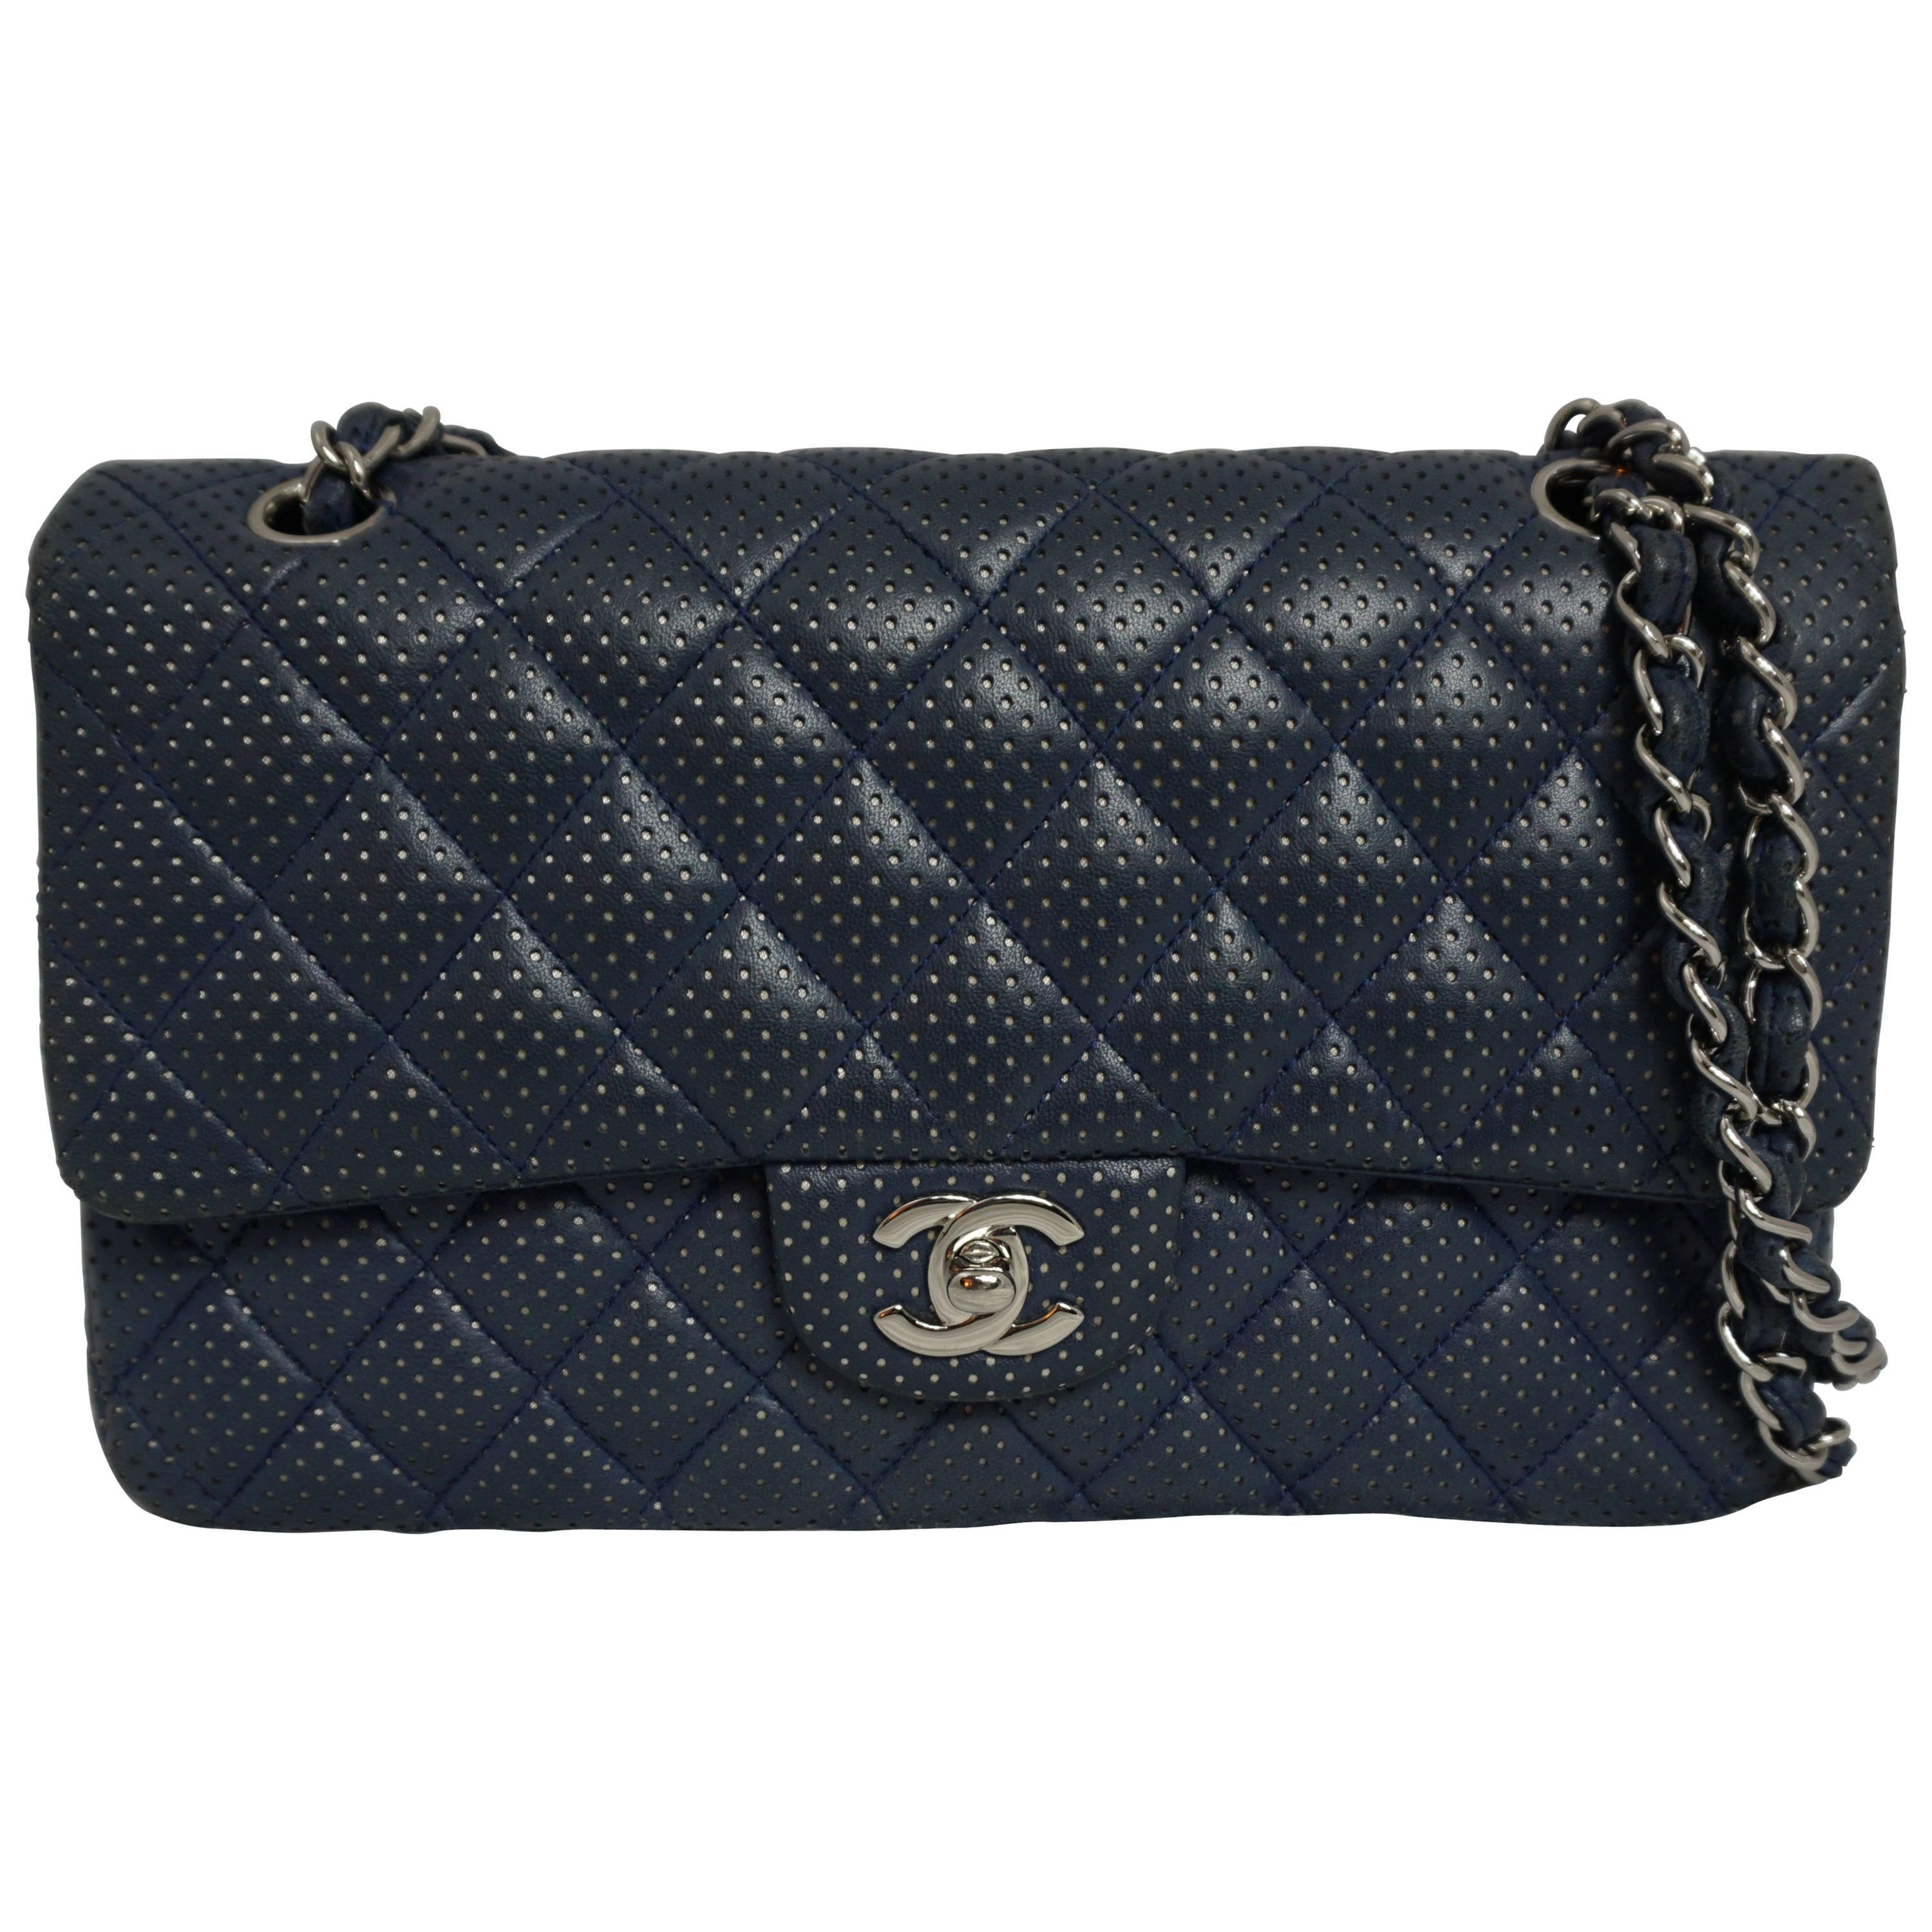 Chanel Chanel Blau/Silber Perforiertes Leder Medium Handtasche mit doppelter Klappe-SHW-2006